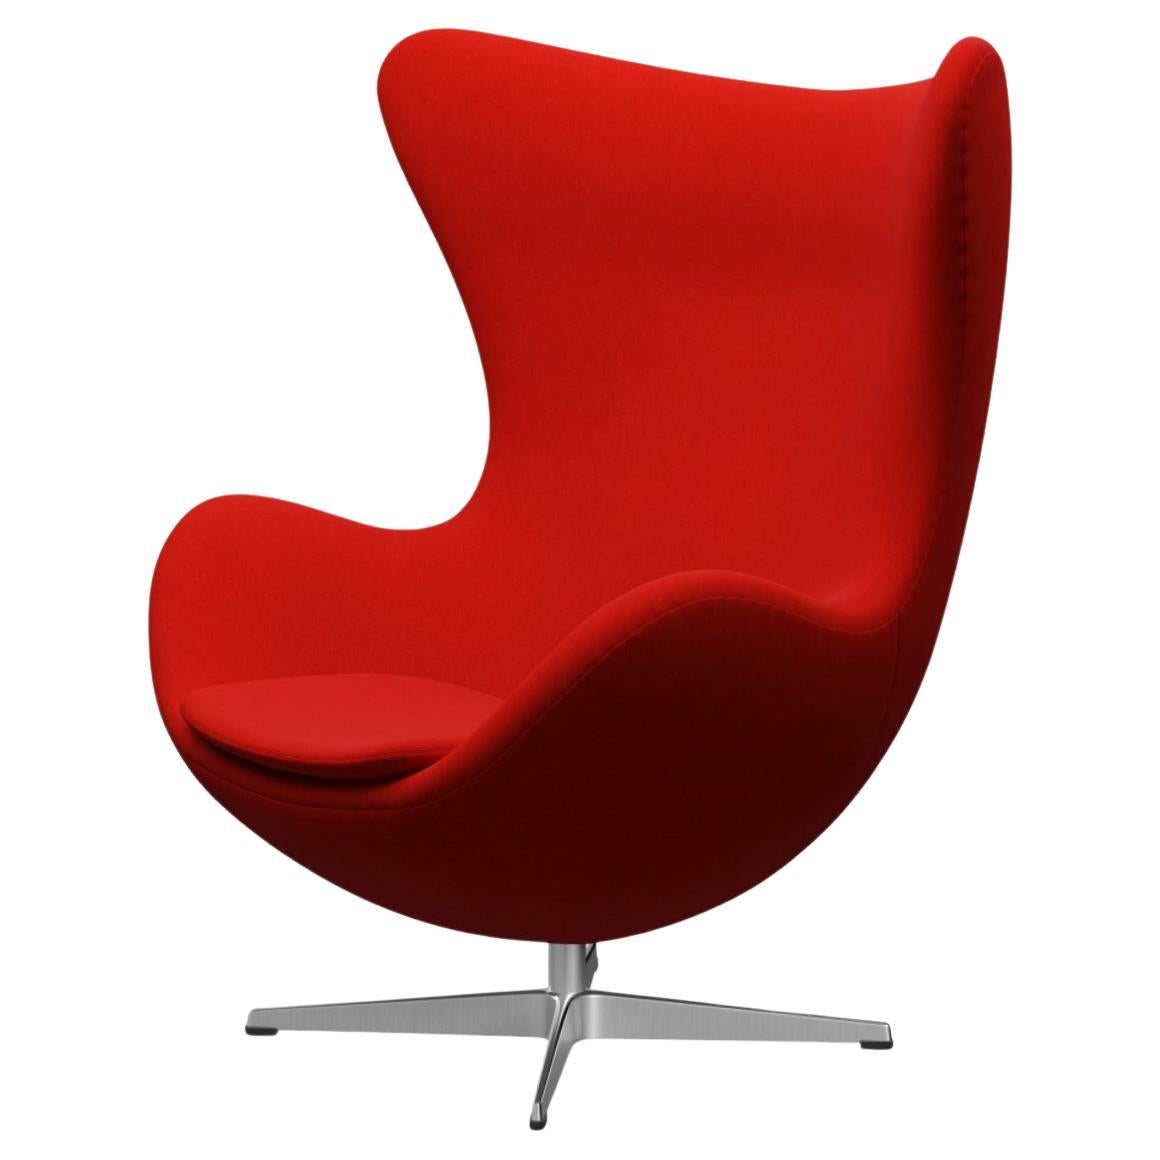 The Egg chair by Arne Jacobsen for Fritz Hansen, Red, Denmark Mid-century Modern For Sale